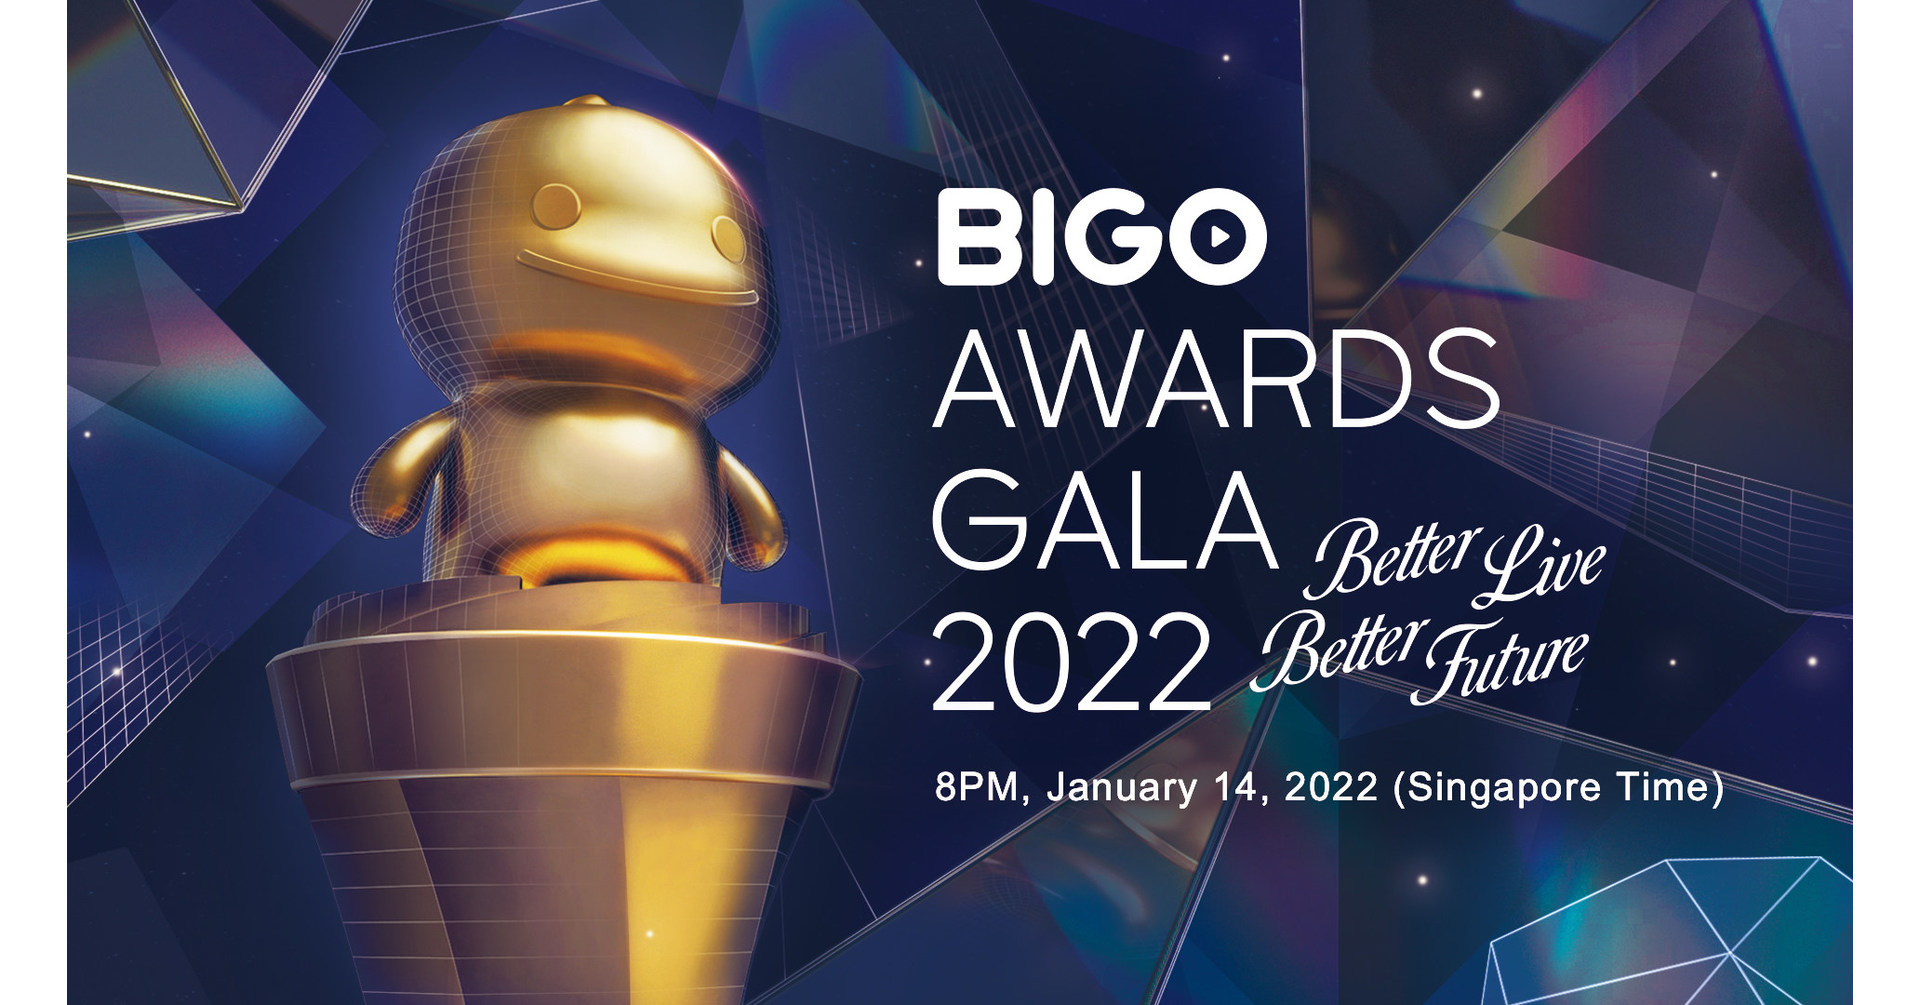 Bigo Live to Livestream The Game Awards (TGA) 2022